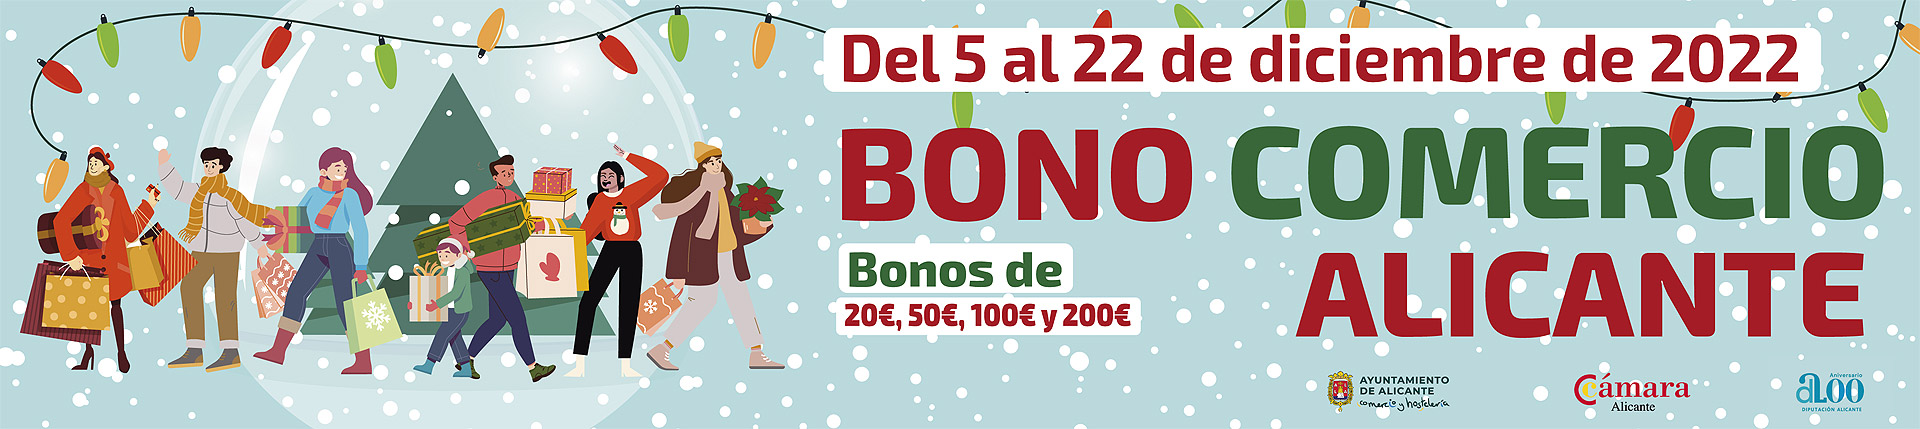 Bono Comercio Navidad